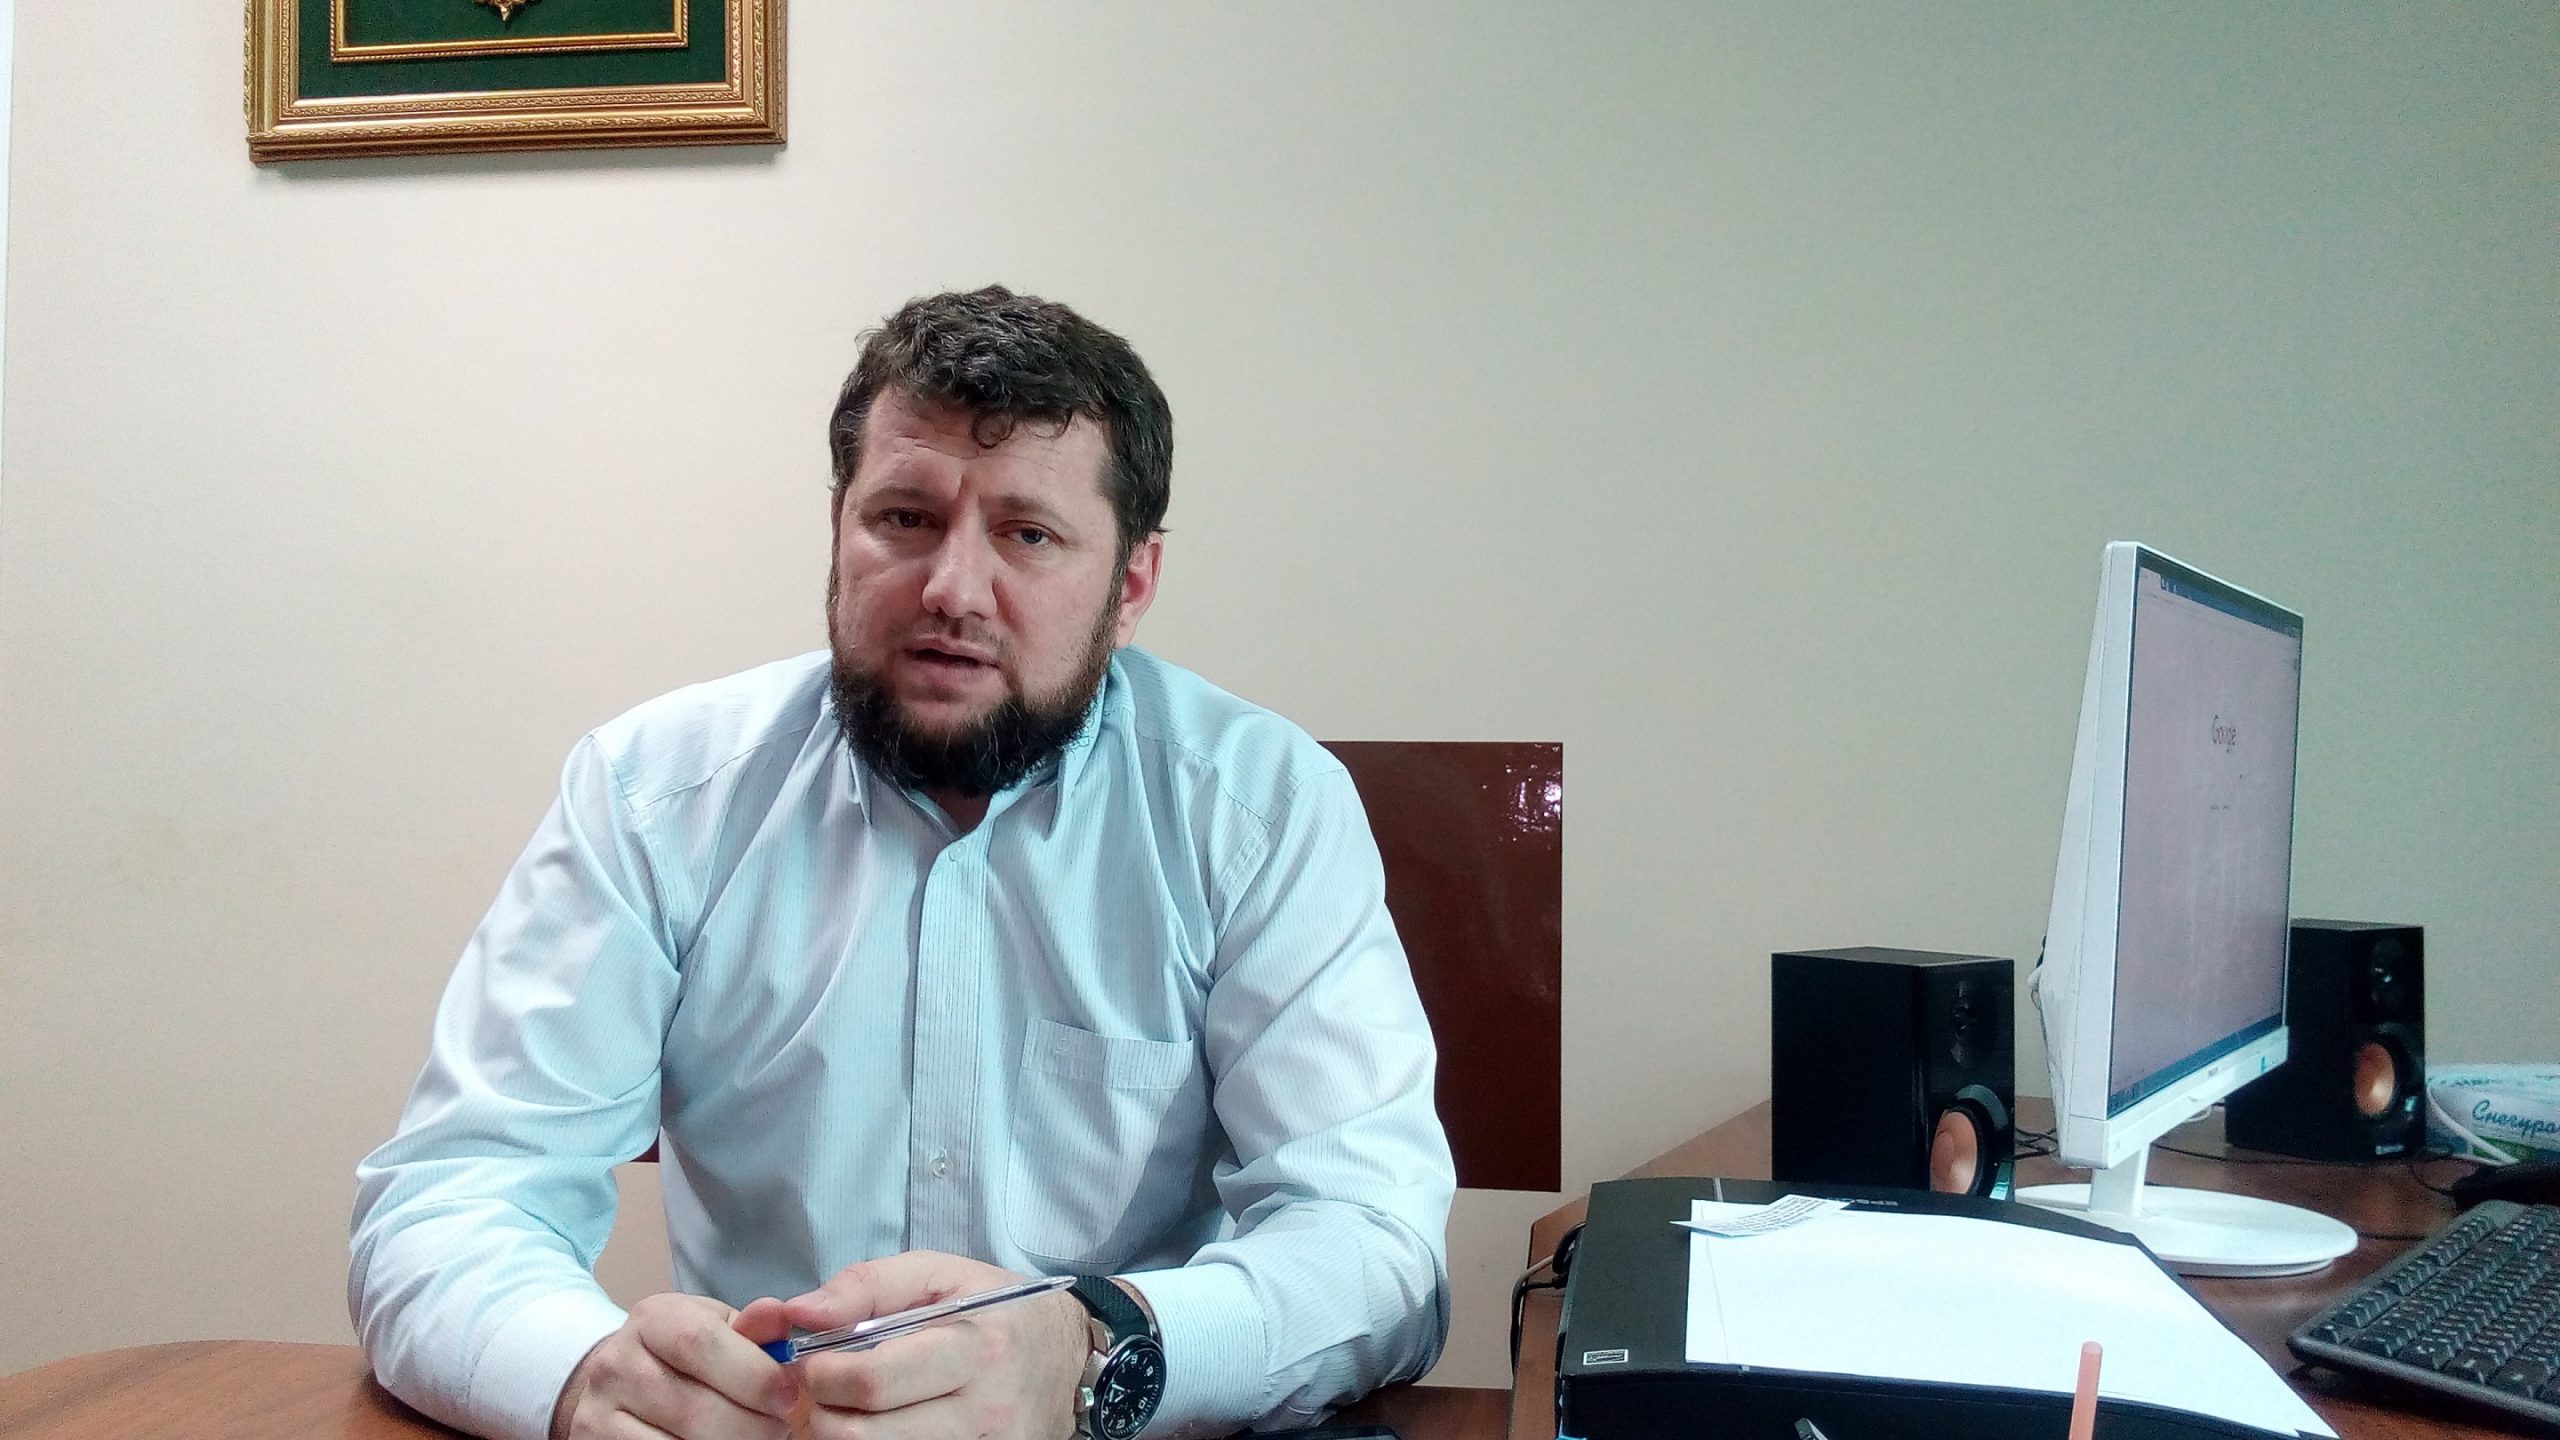 الإعلامي كاسبر إسماعيلوف، نائب مدير قناة "الطريق" الإسلامية بجمهورية الشيشان